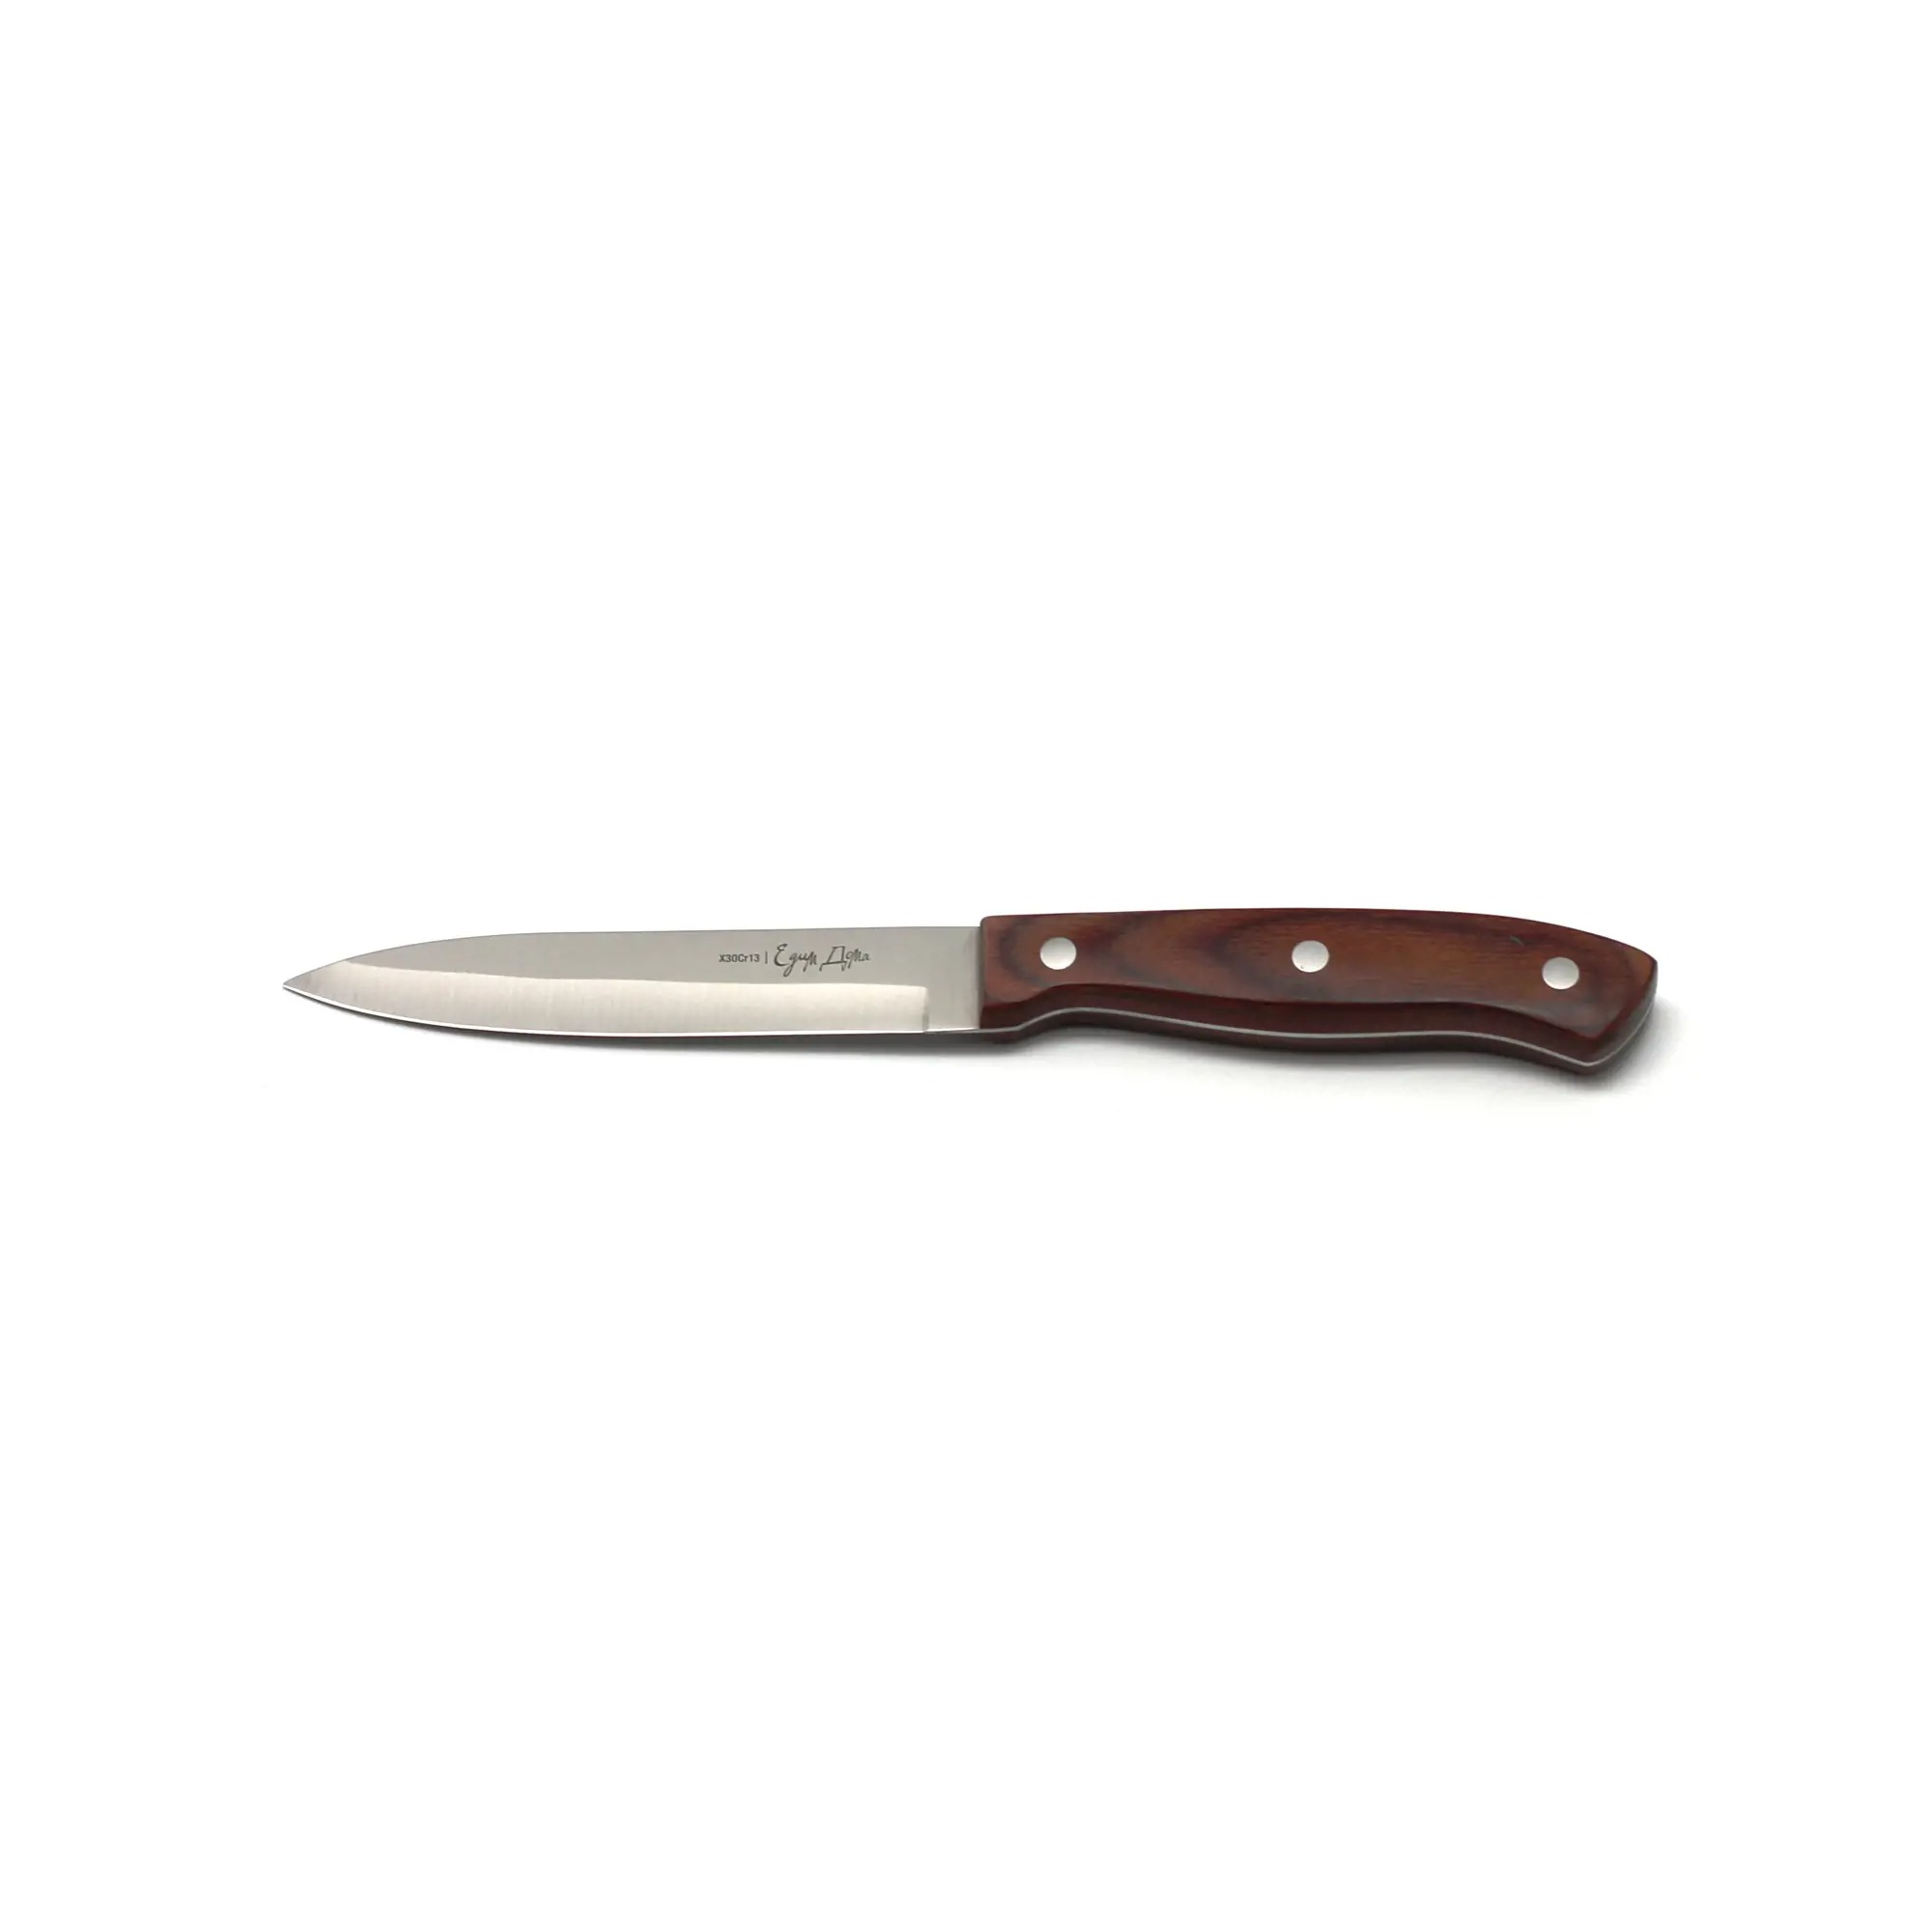 нож для нарезки едим дома 20см листовой ed 404 Нож универсальный Едим дома кухонный 12см листовой (ED-408)